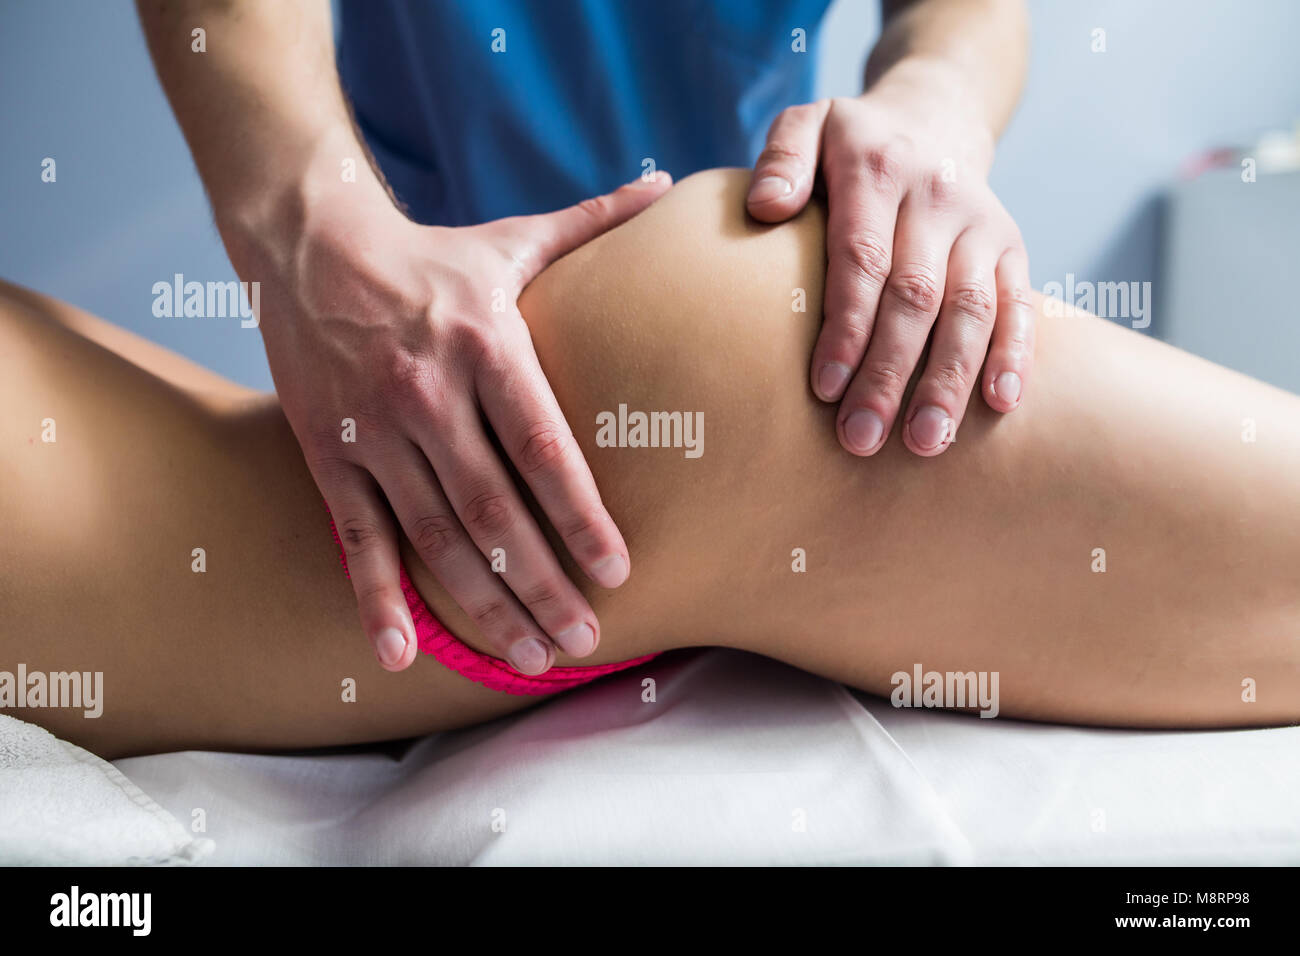 Las piernas y nalgas masajes para reducir la celulitis y mantener un aspecto saludable Fotografía de stock Alamy